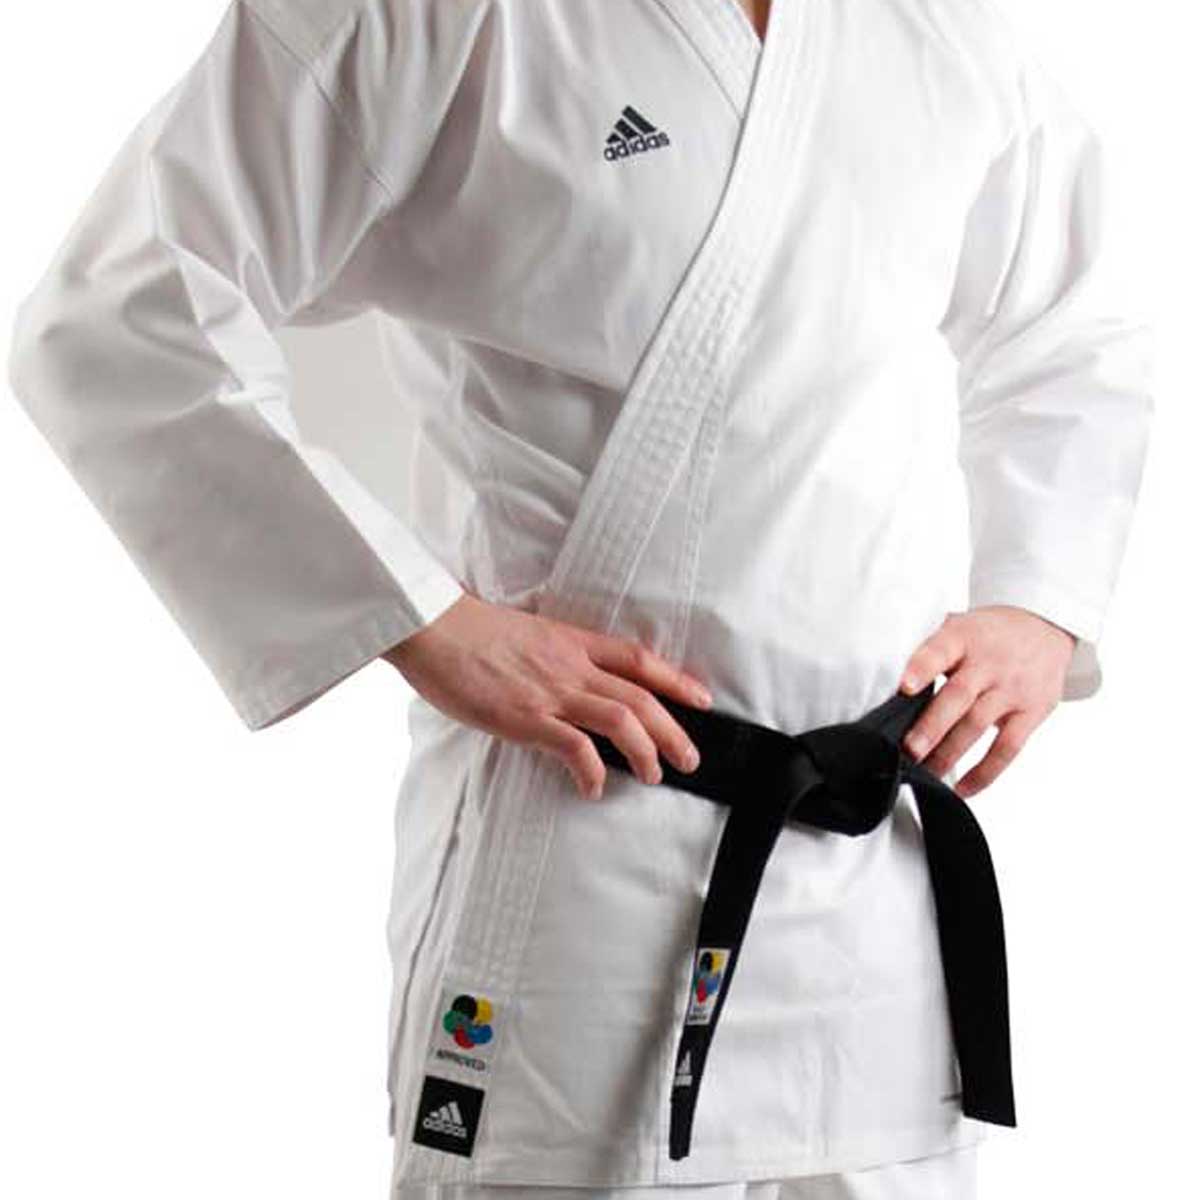 Karategi Adidas Kumite K220C 